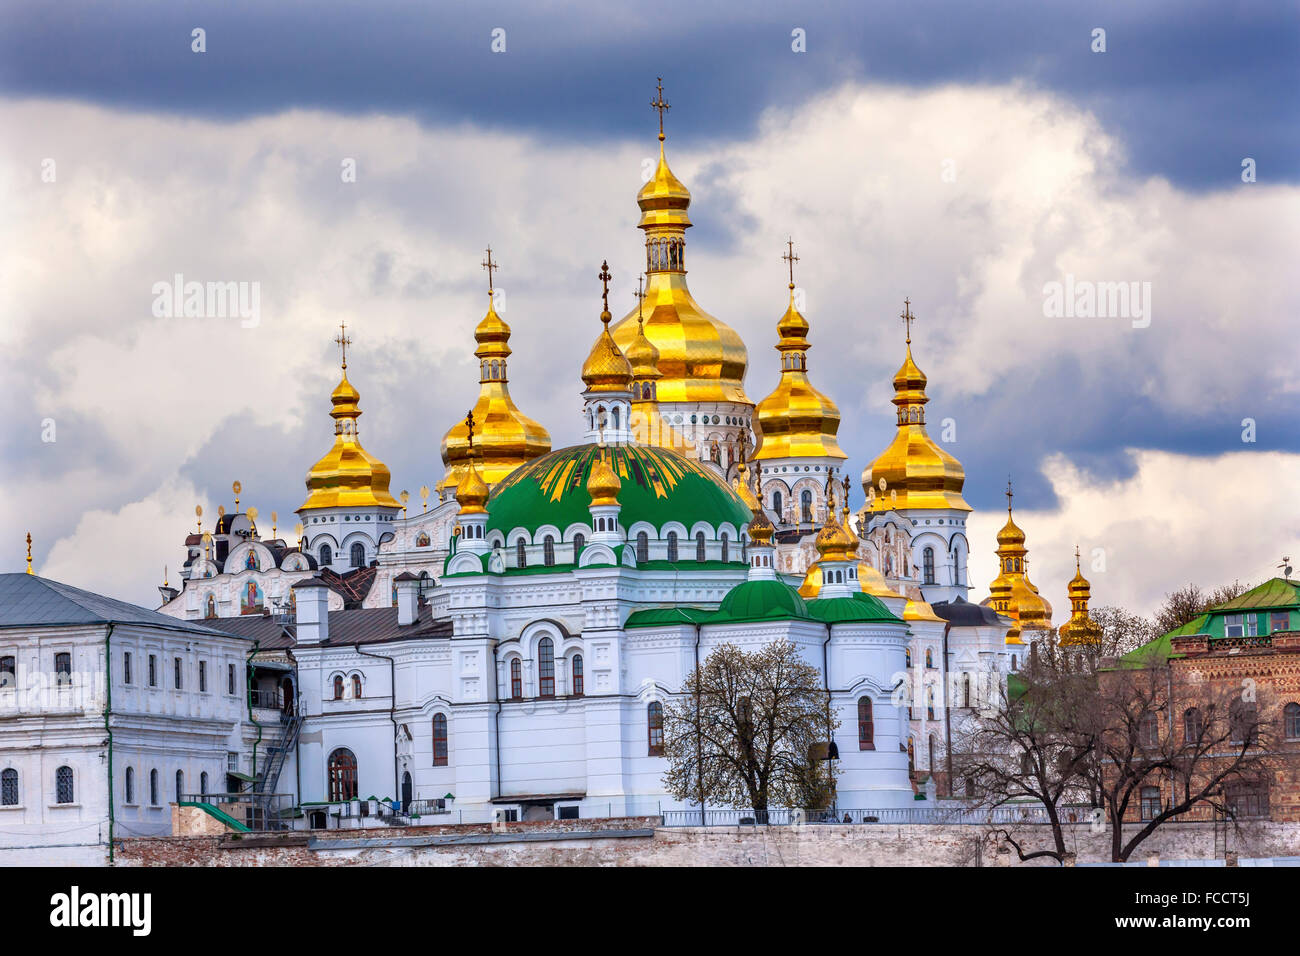 Uspenskij Kathedrale Heiligen Annahme Pechrsk Lavra Kathedrale Kiew Ukraine.  Älteste orthodoxe Kloster In der Ukraine und Russland Stockfoto